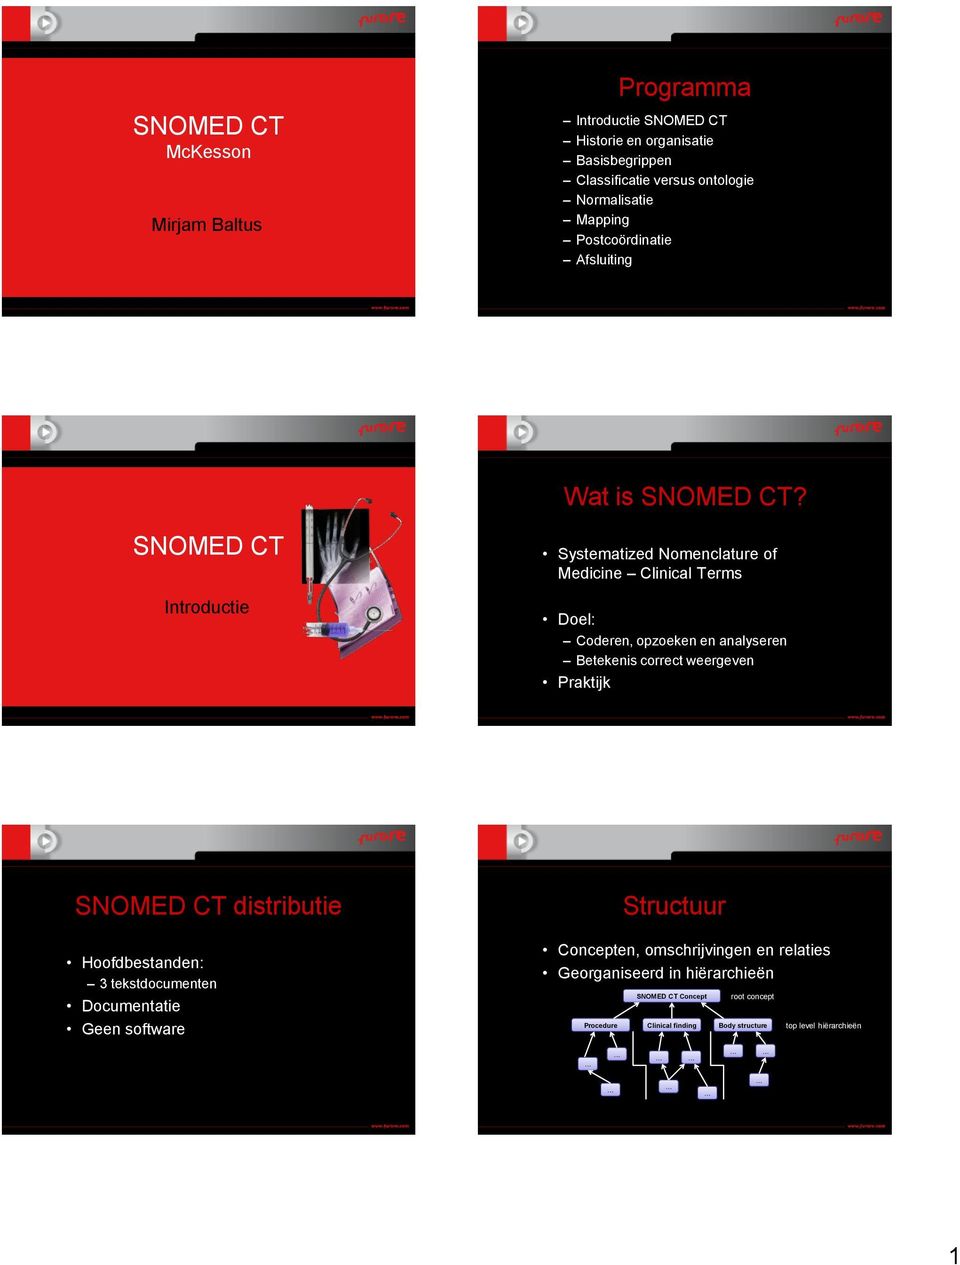 SNOMED CT Introductie Systematized Nomenclature of Medicine Clinical Terms Doel: Coderen, opzoeken en analyseren Betekenis correct weergeven Praktijk